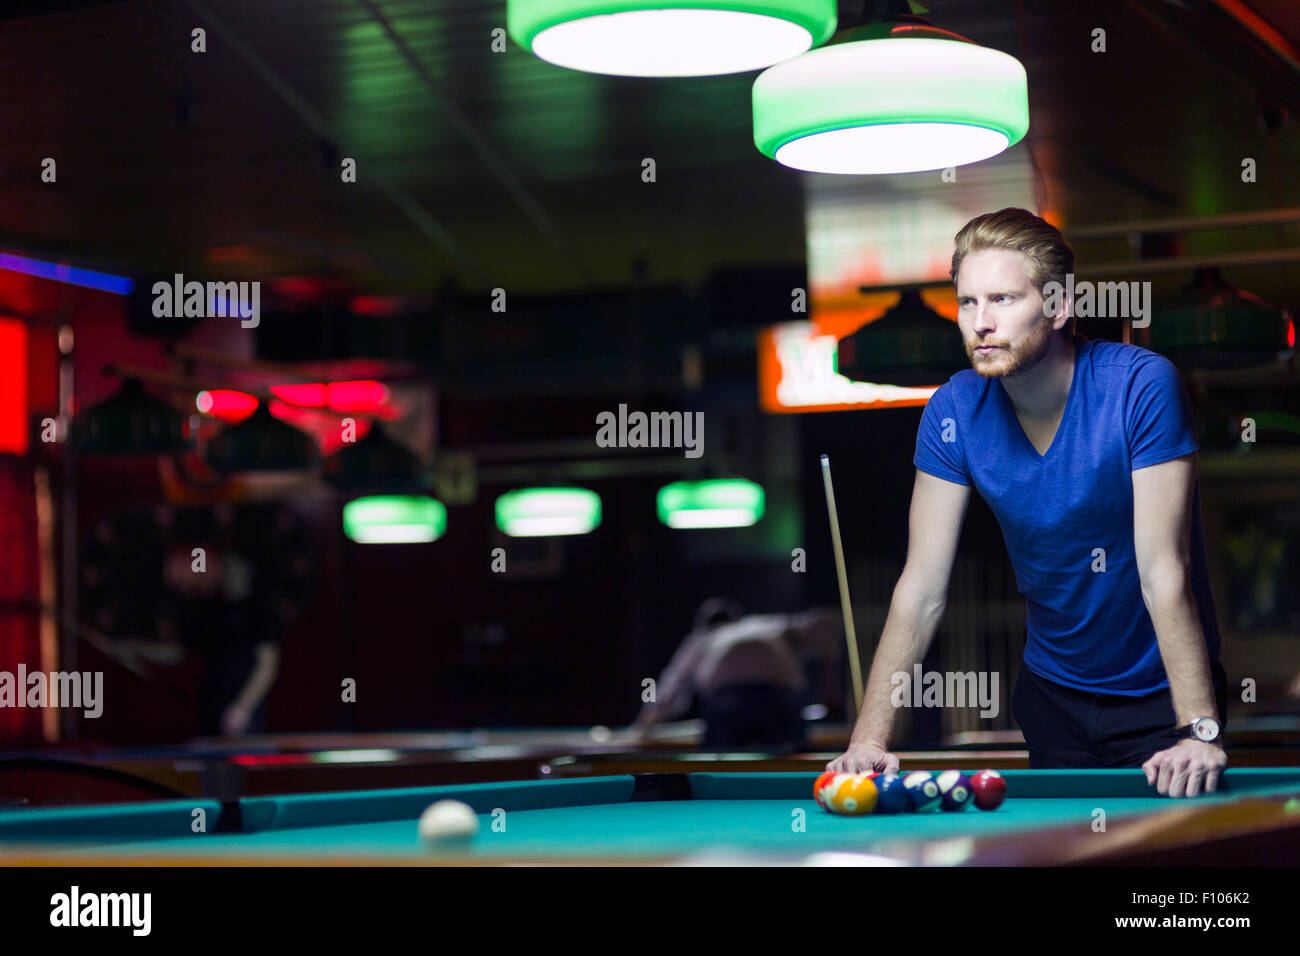 Bel giovane giocatore di snooker la piegatura sopra la tavola in un bar con una bella illuminazione ambientale Foto Stock